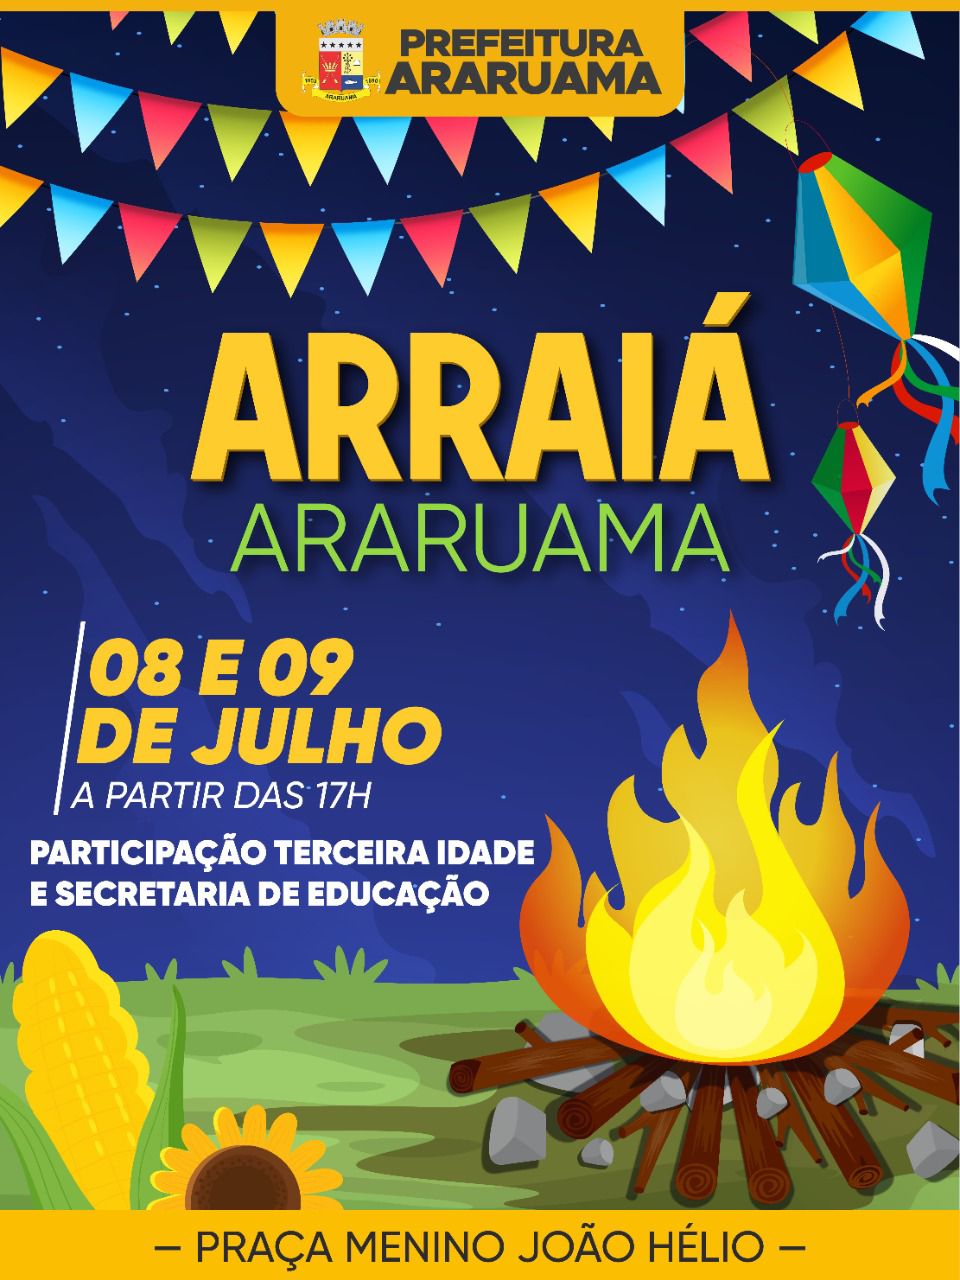 Prefeitura vai realizar a festa julina “Arraiá Araruama”